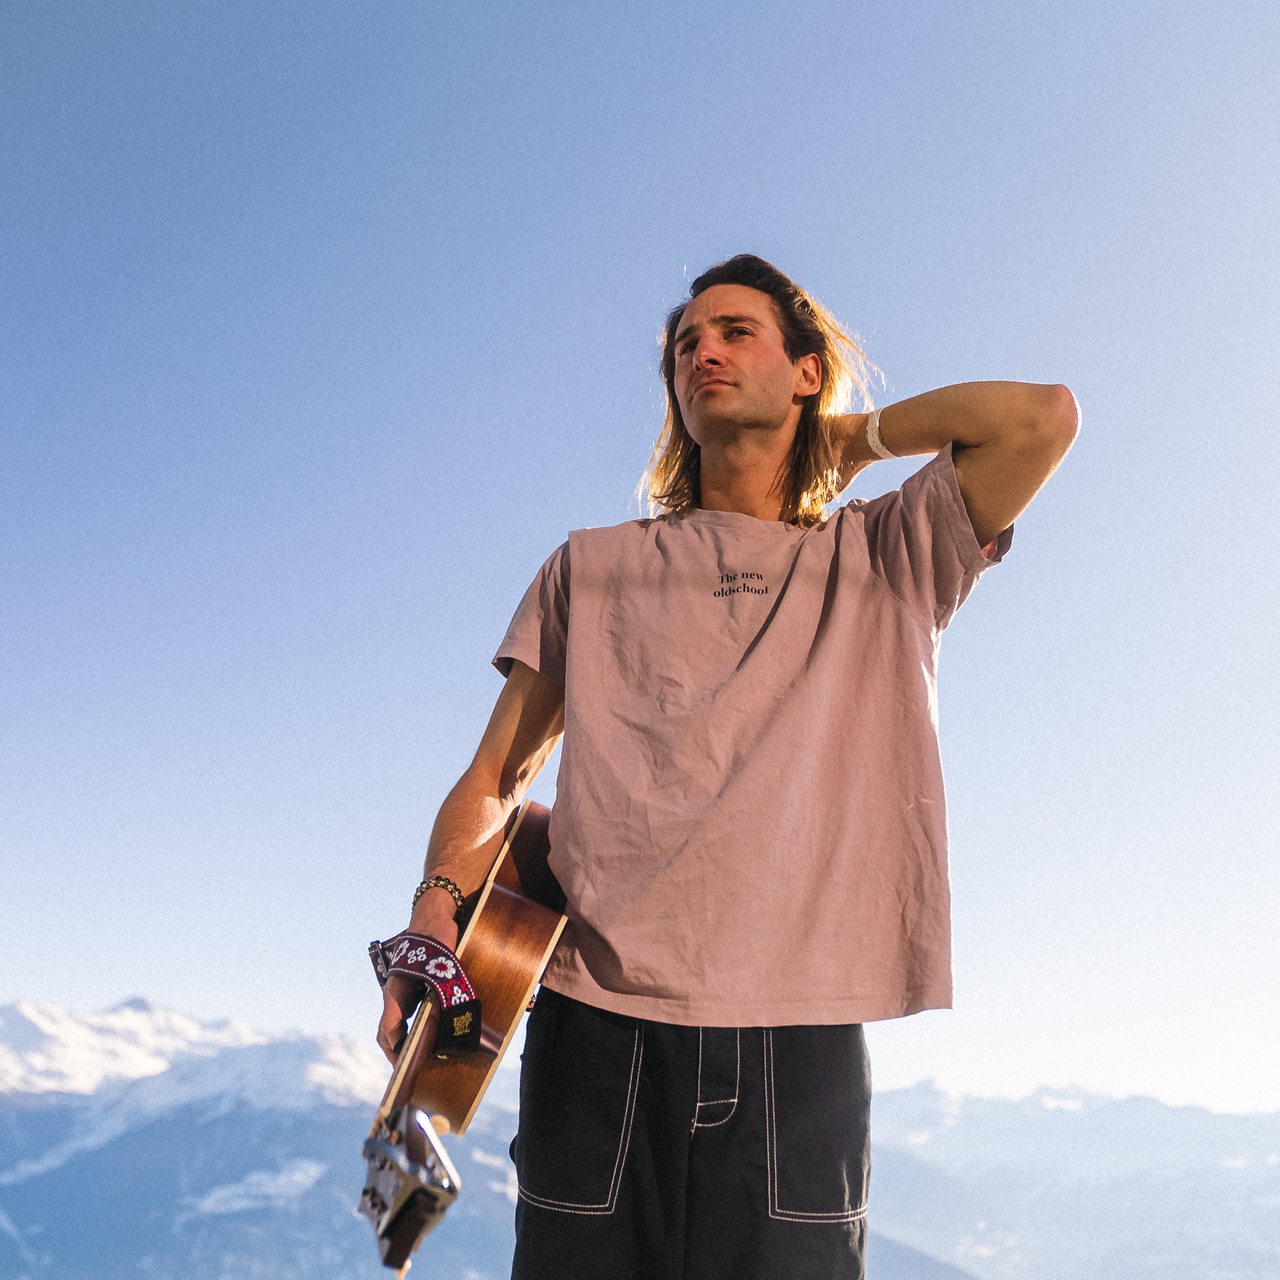 Der Musiker Pat Burgener steht mit Gitarre und T-Shirt in den Schweizer Alpen